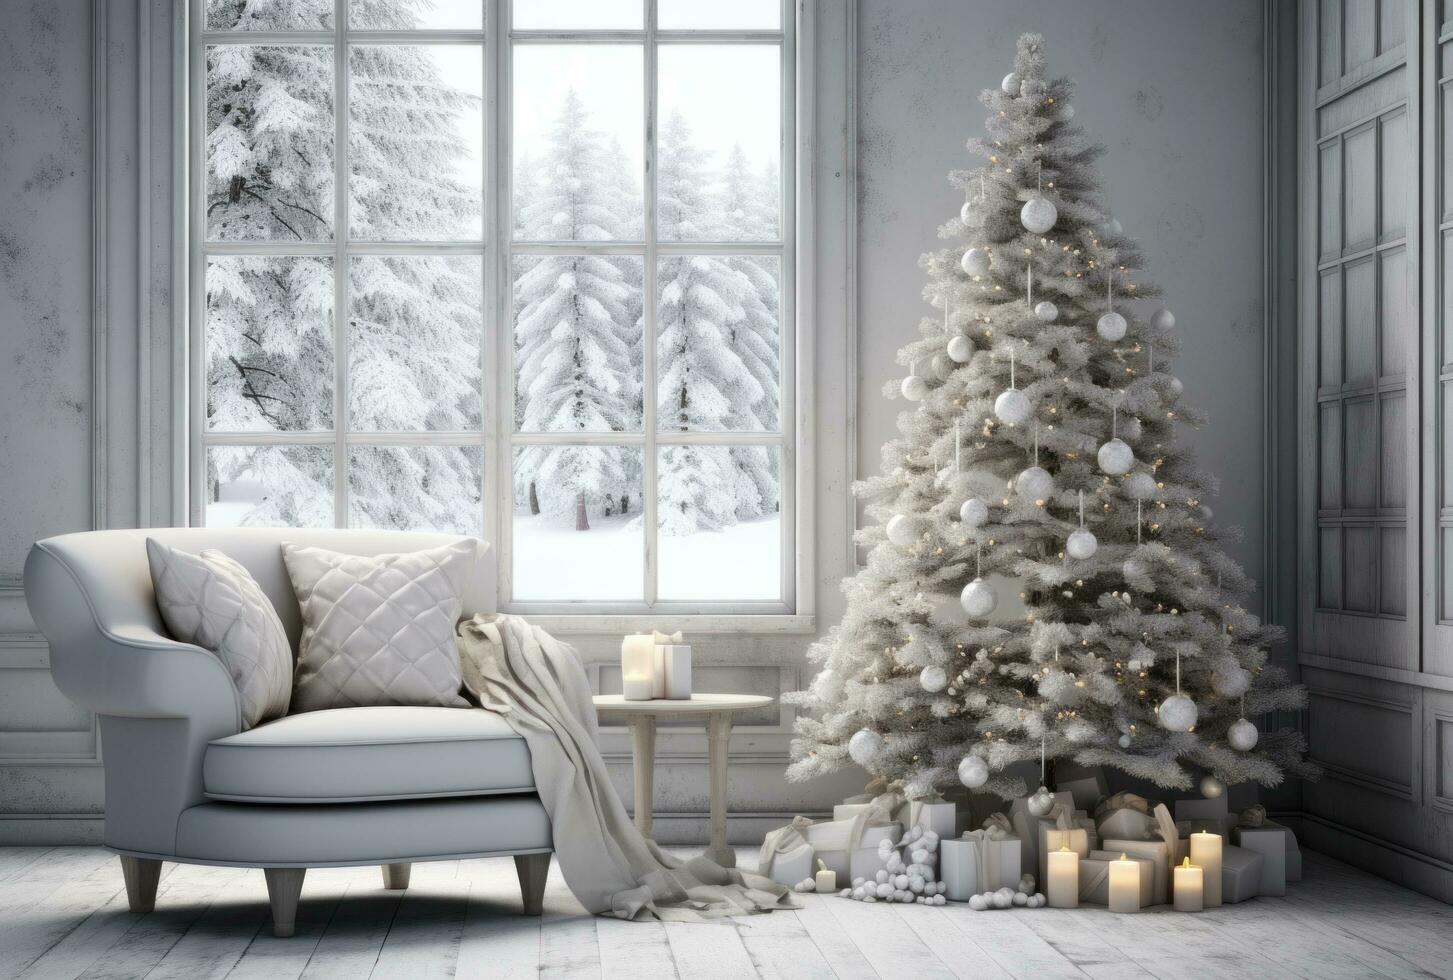 ai gerado inverno branco vivo quarto com Natal árvore foto